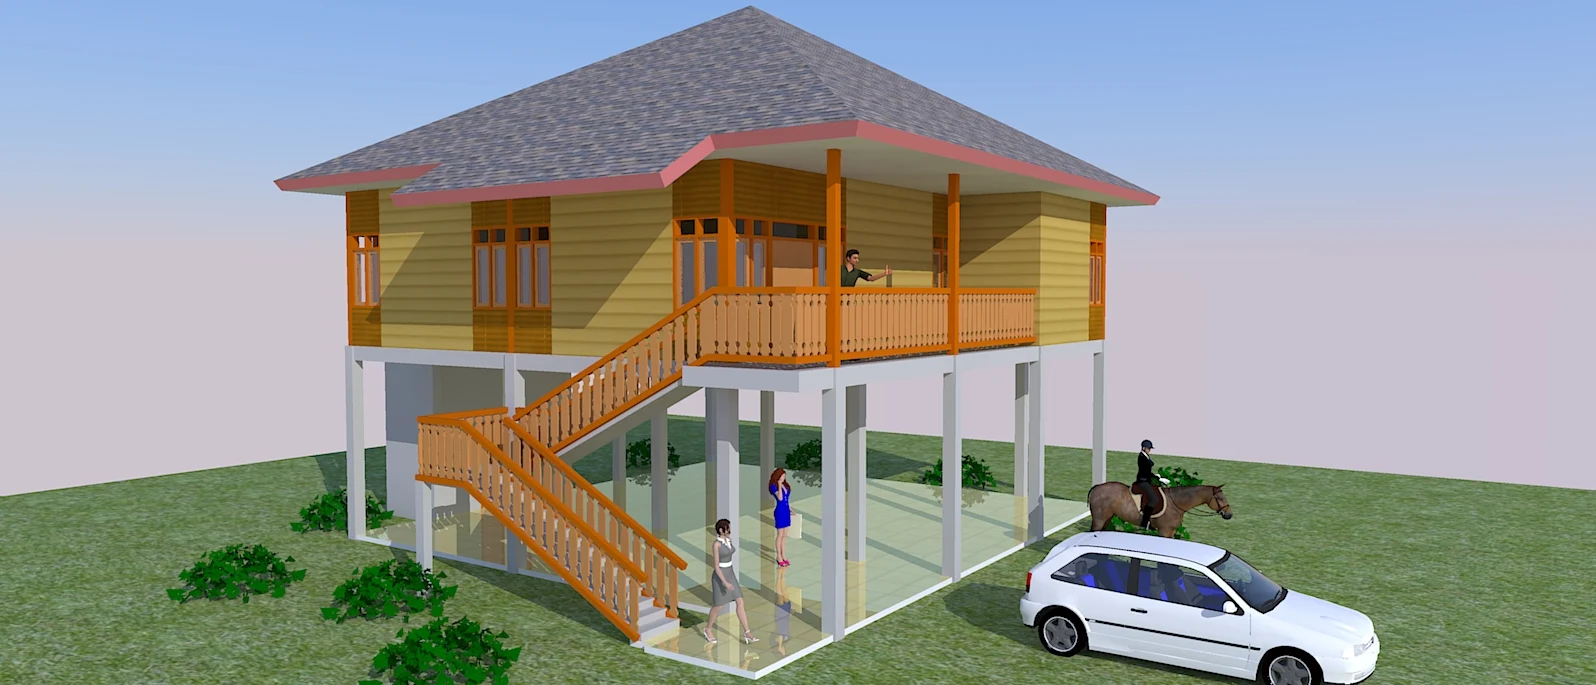 Gambar Rumah Kayu Jasa Site Plan